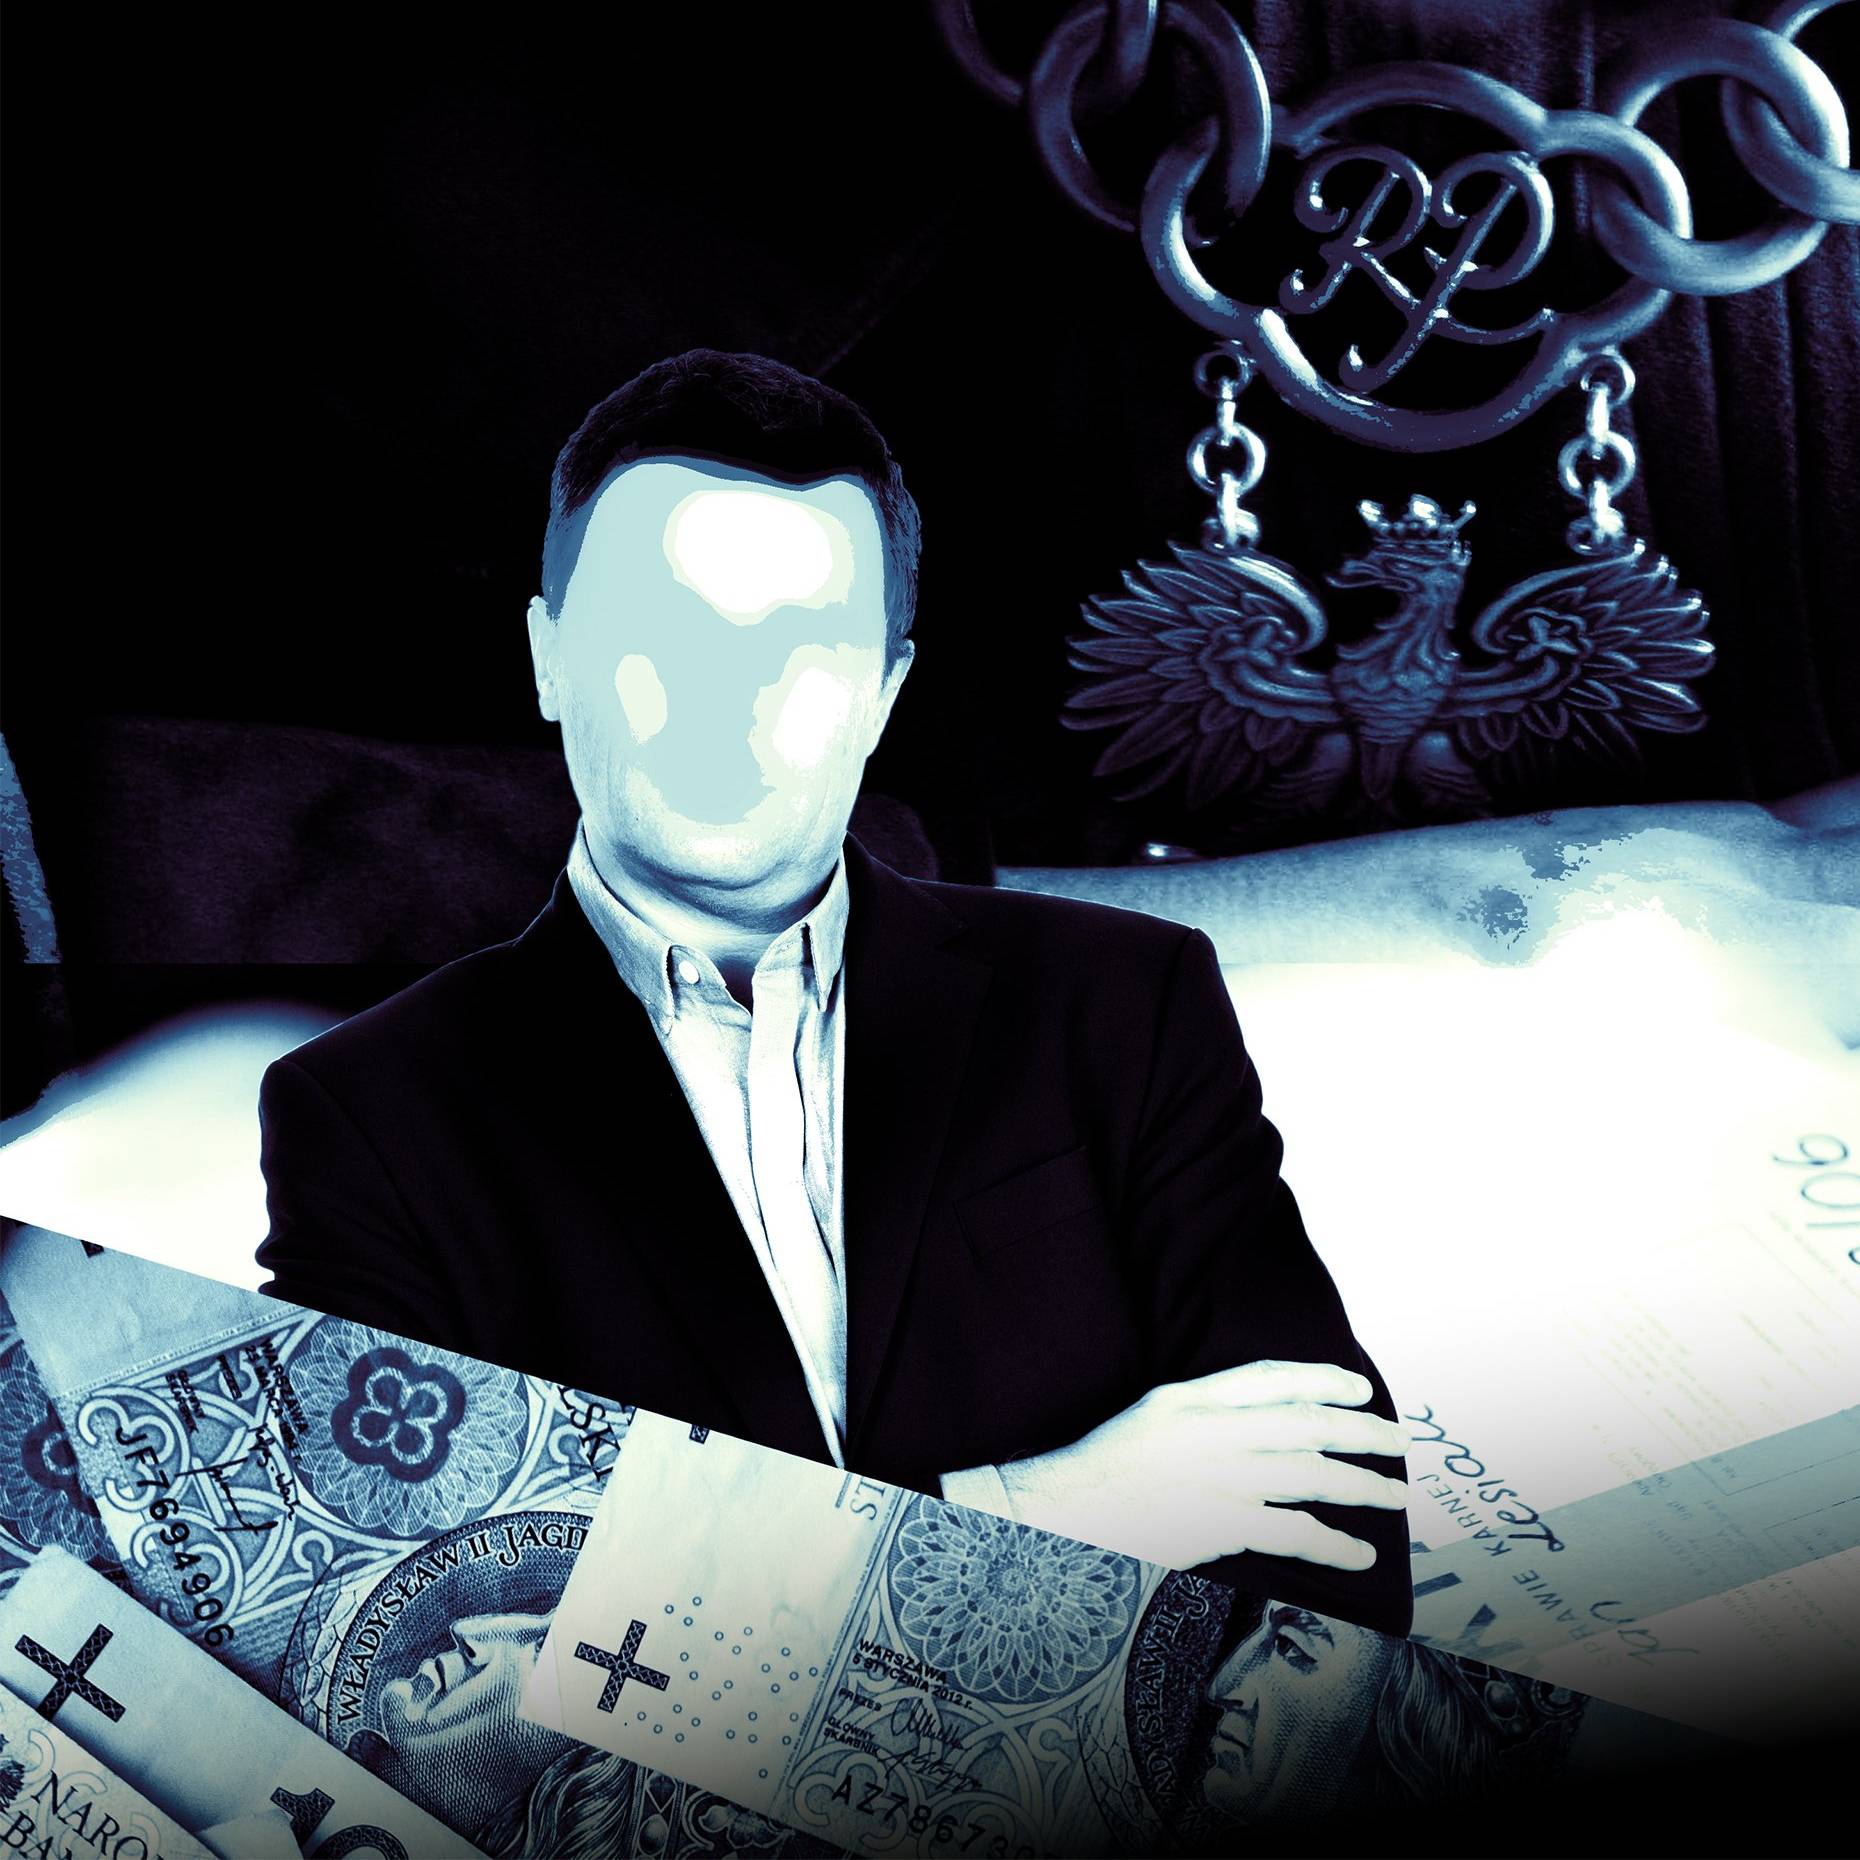 Ilustracja przedstawiająca mężczyznę z zamazaną twarzą, na pierwszym planie banknoty, w tle sędziowski łańcuch z godłem